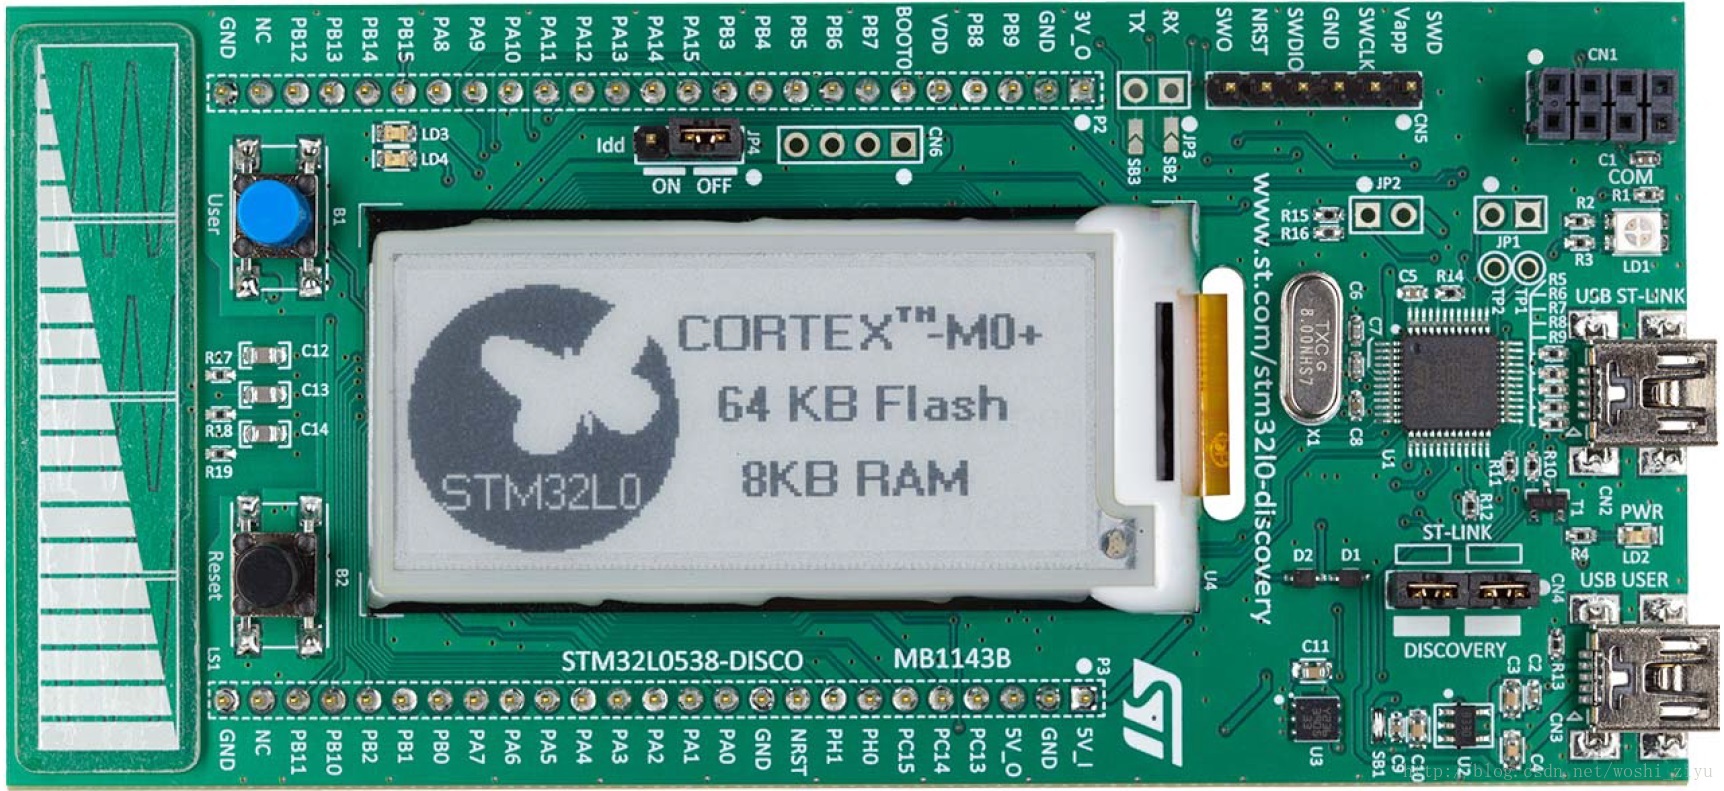 使用STM32L053探索板上的IDD电流检测功能